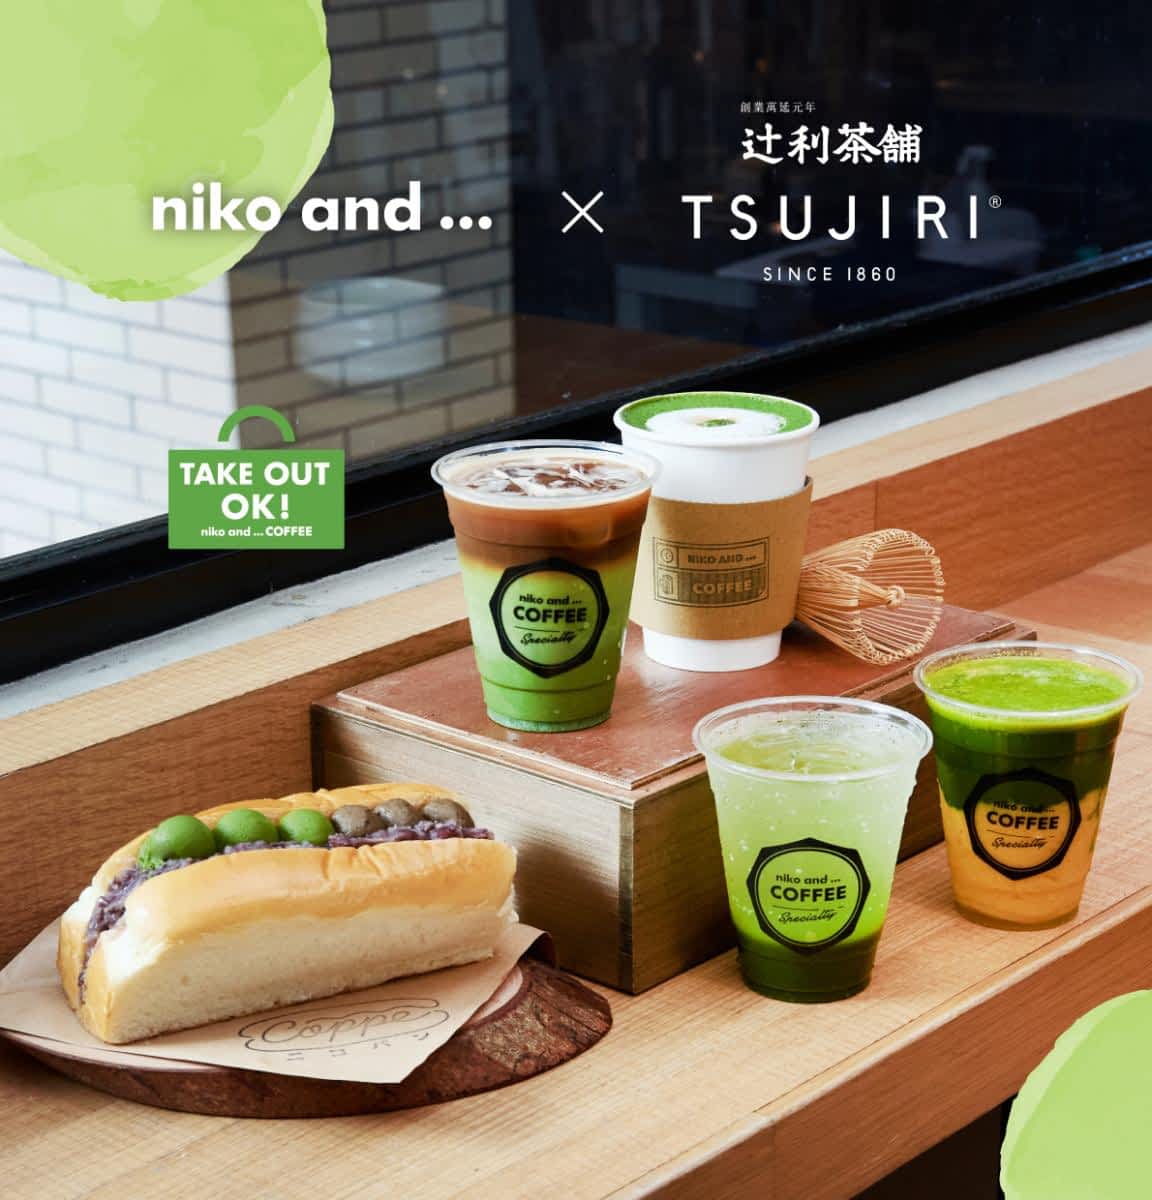 niko and…联名日本百年抹茶「辻利茶舗」推4款甜点、饮品！「双茶红豆乳酪面包」不爱抹茶的也喜欢